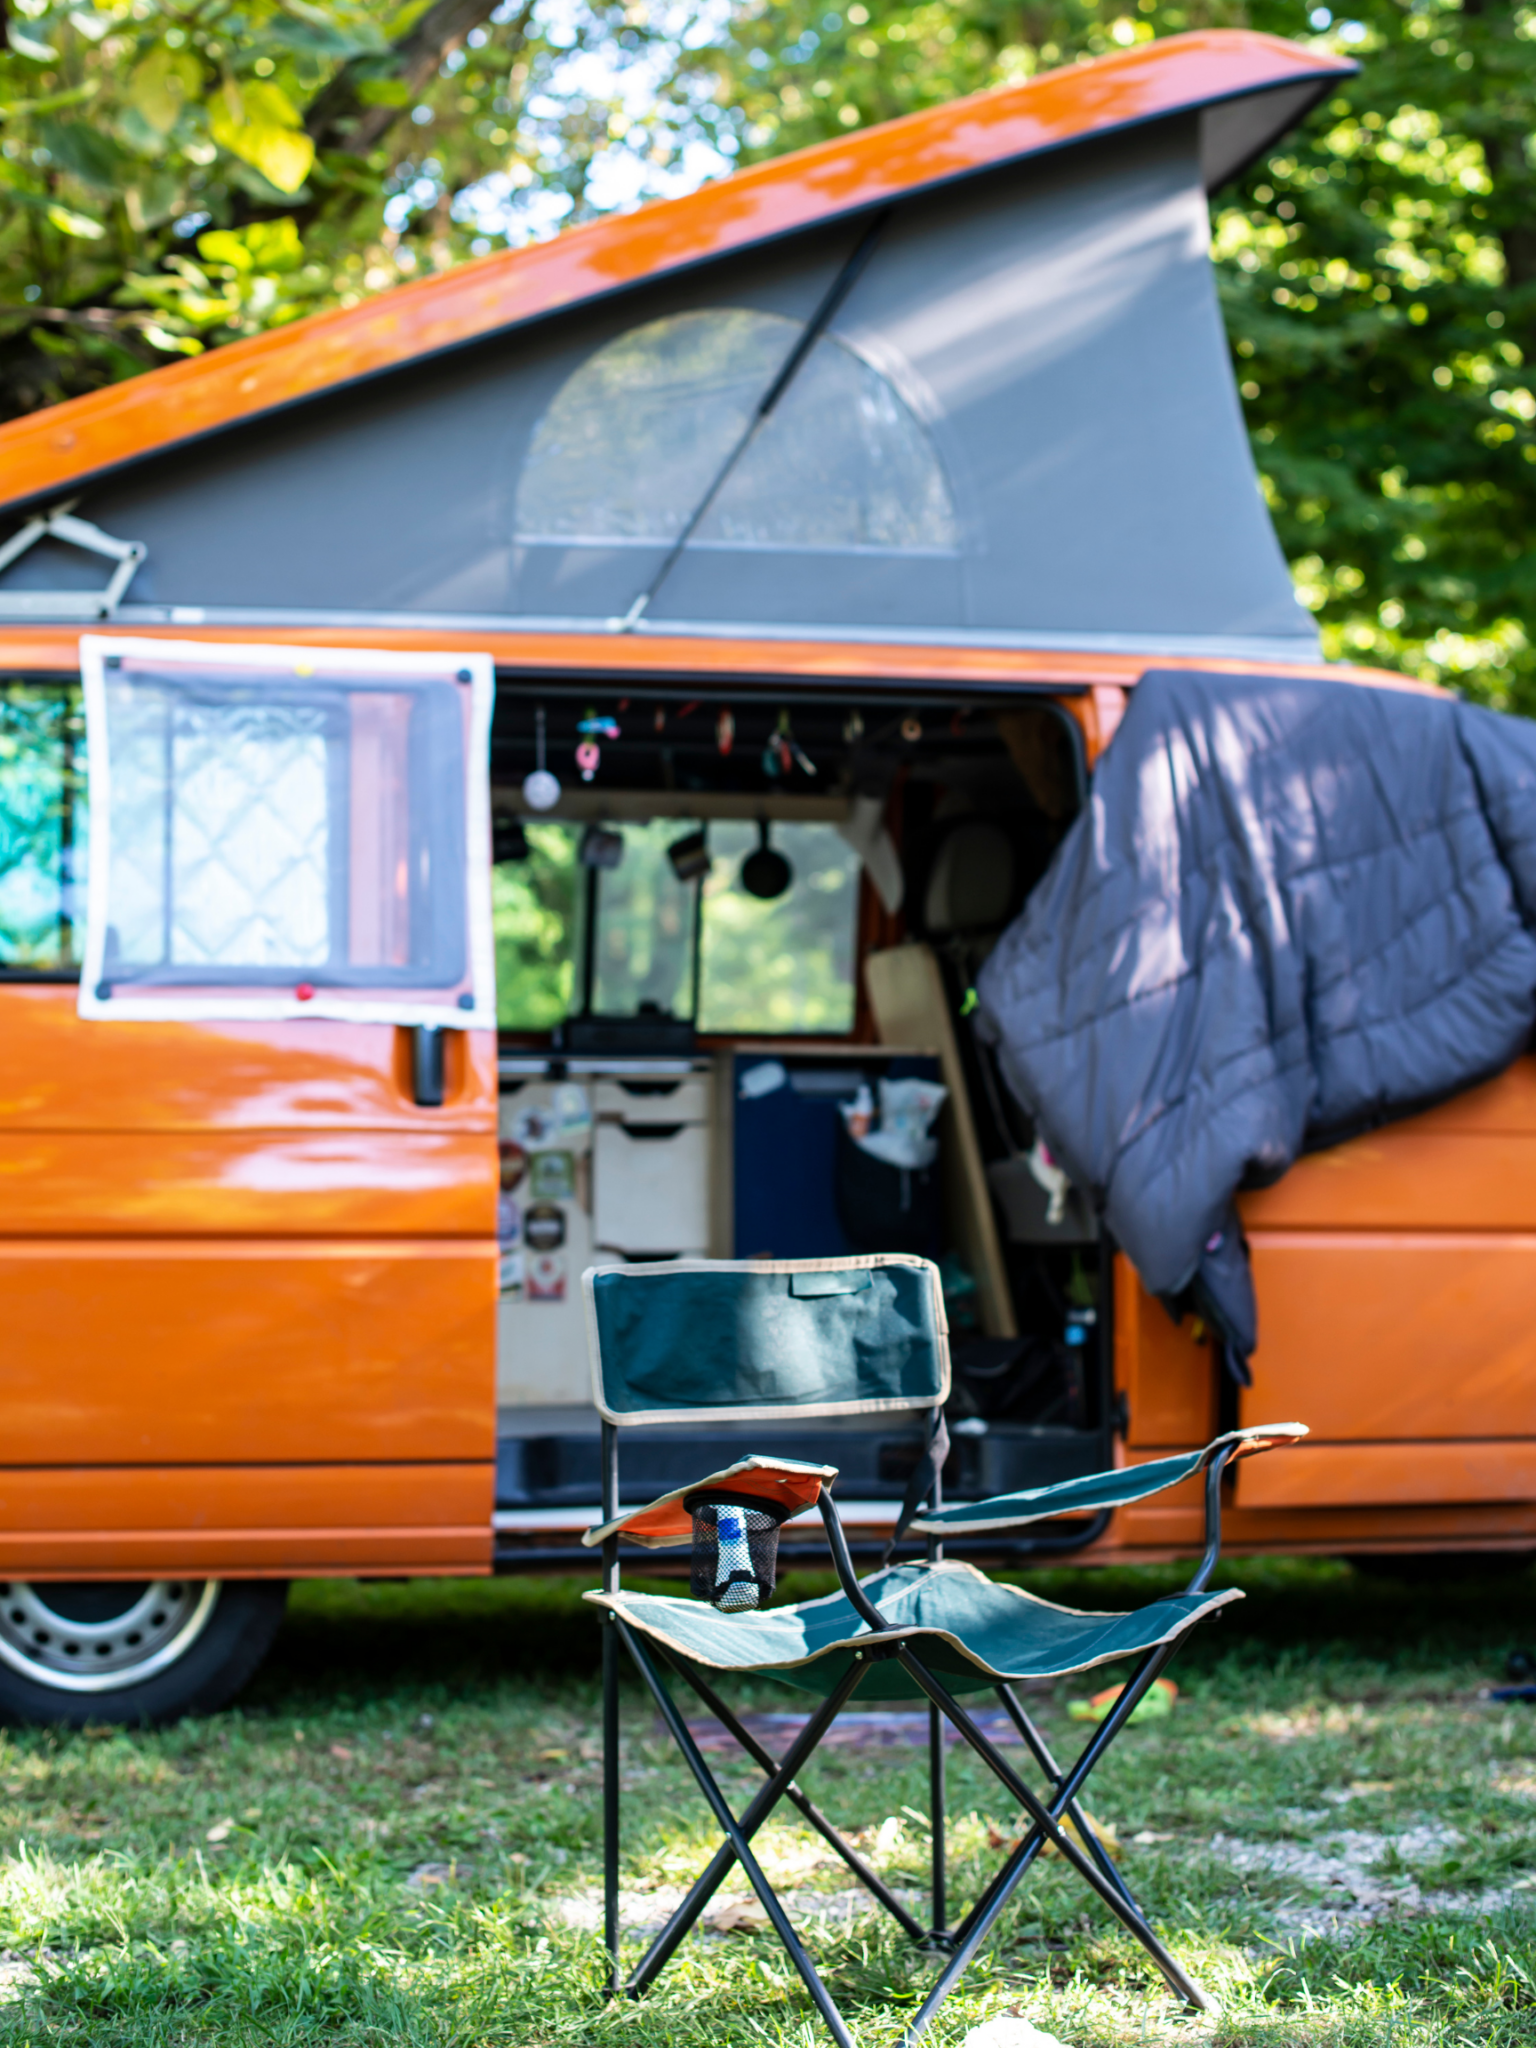 Camping chair in front of orange pop top van